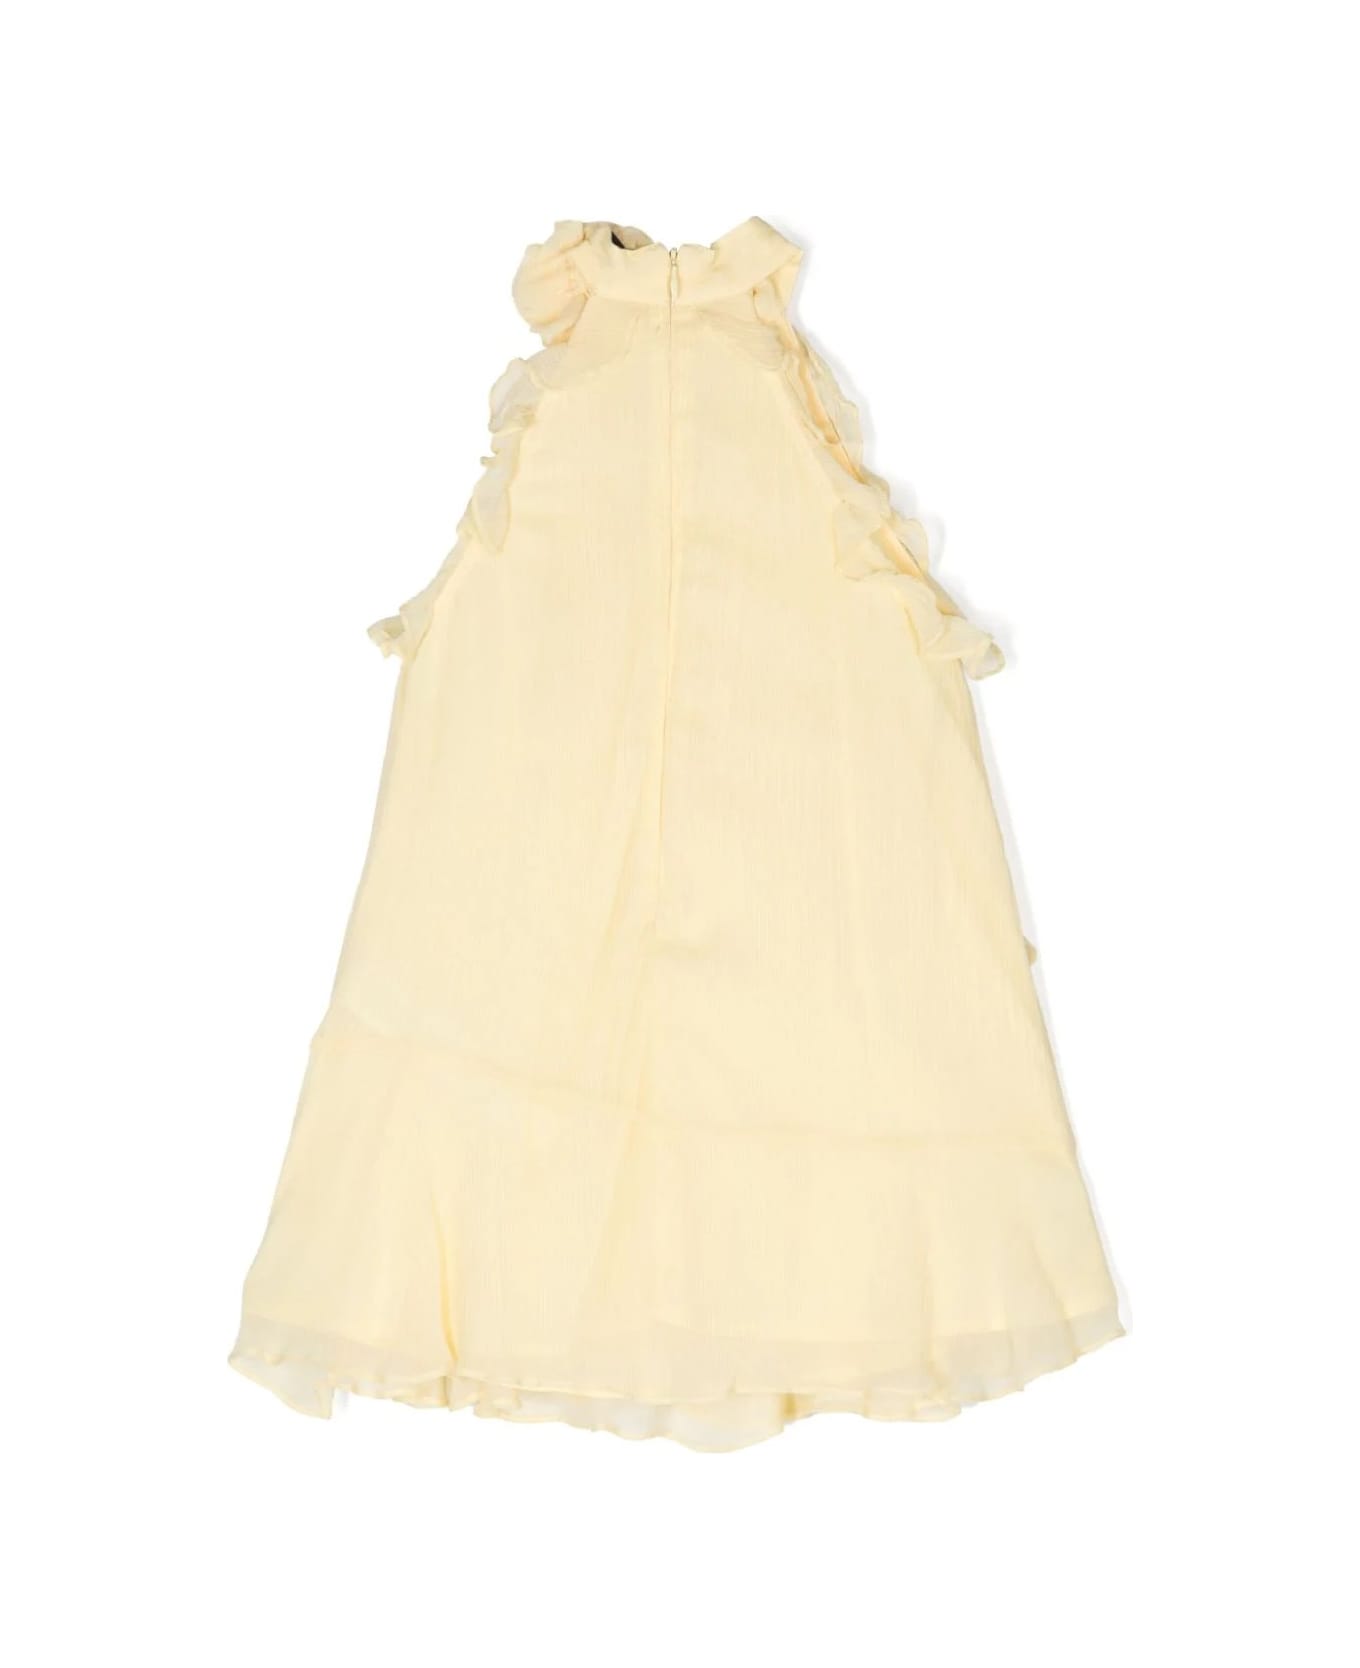 Miss Blumarine Pastel Yellow Ruffled Chiffon Dress - Yellow